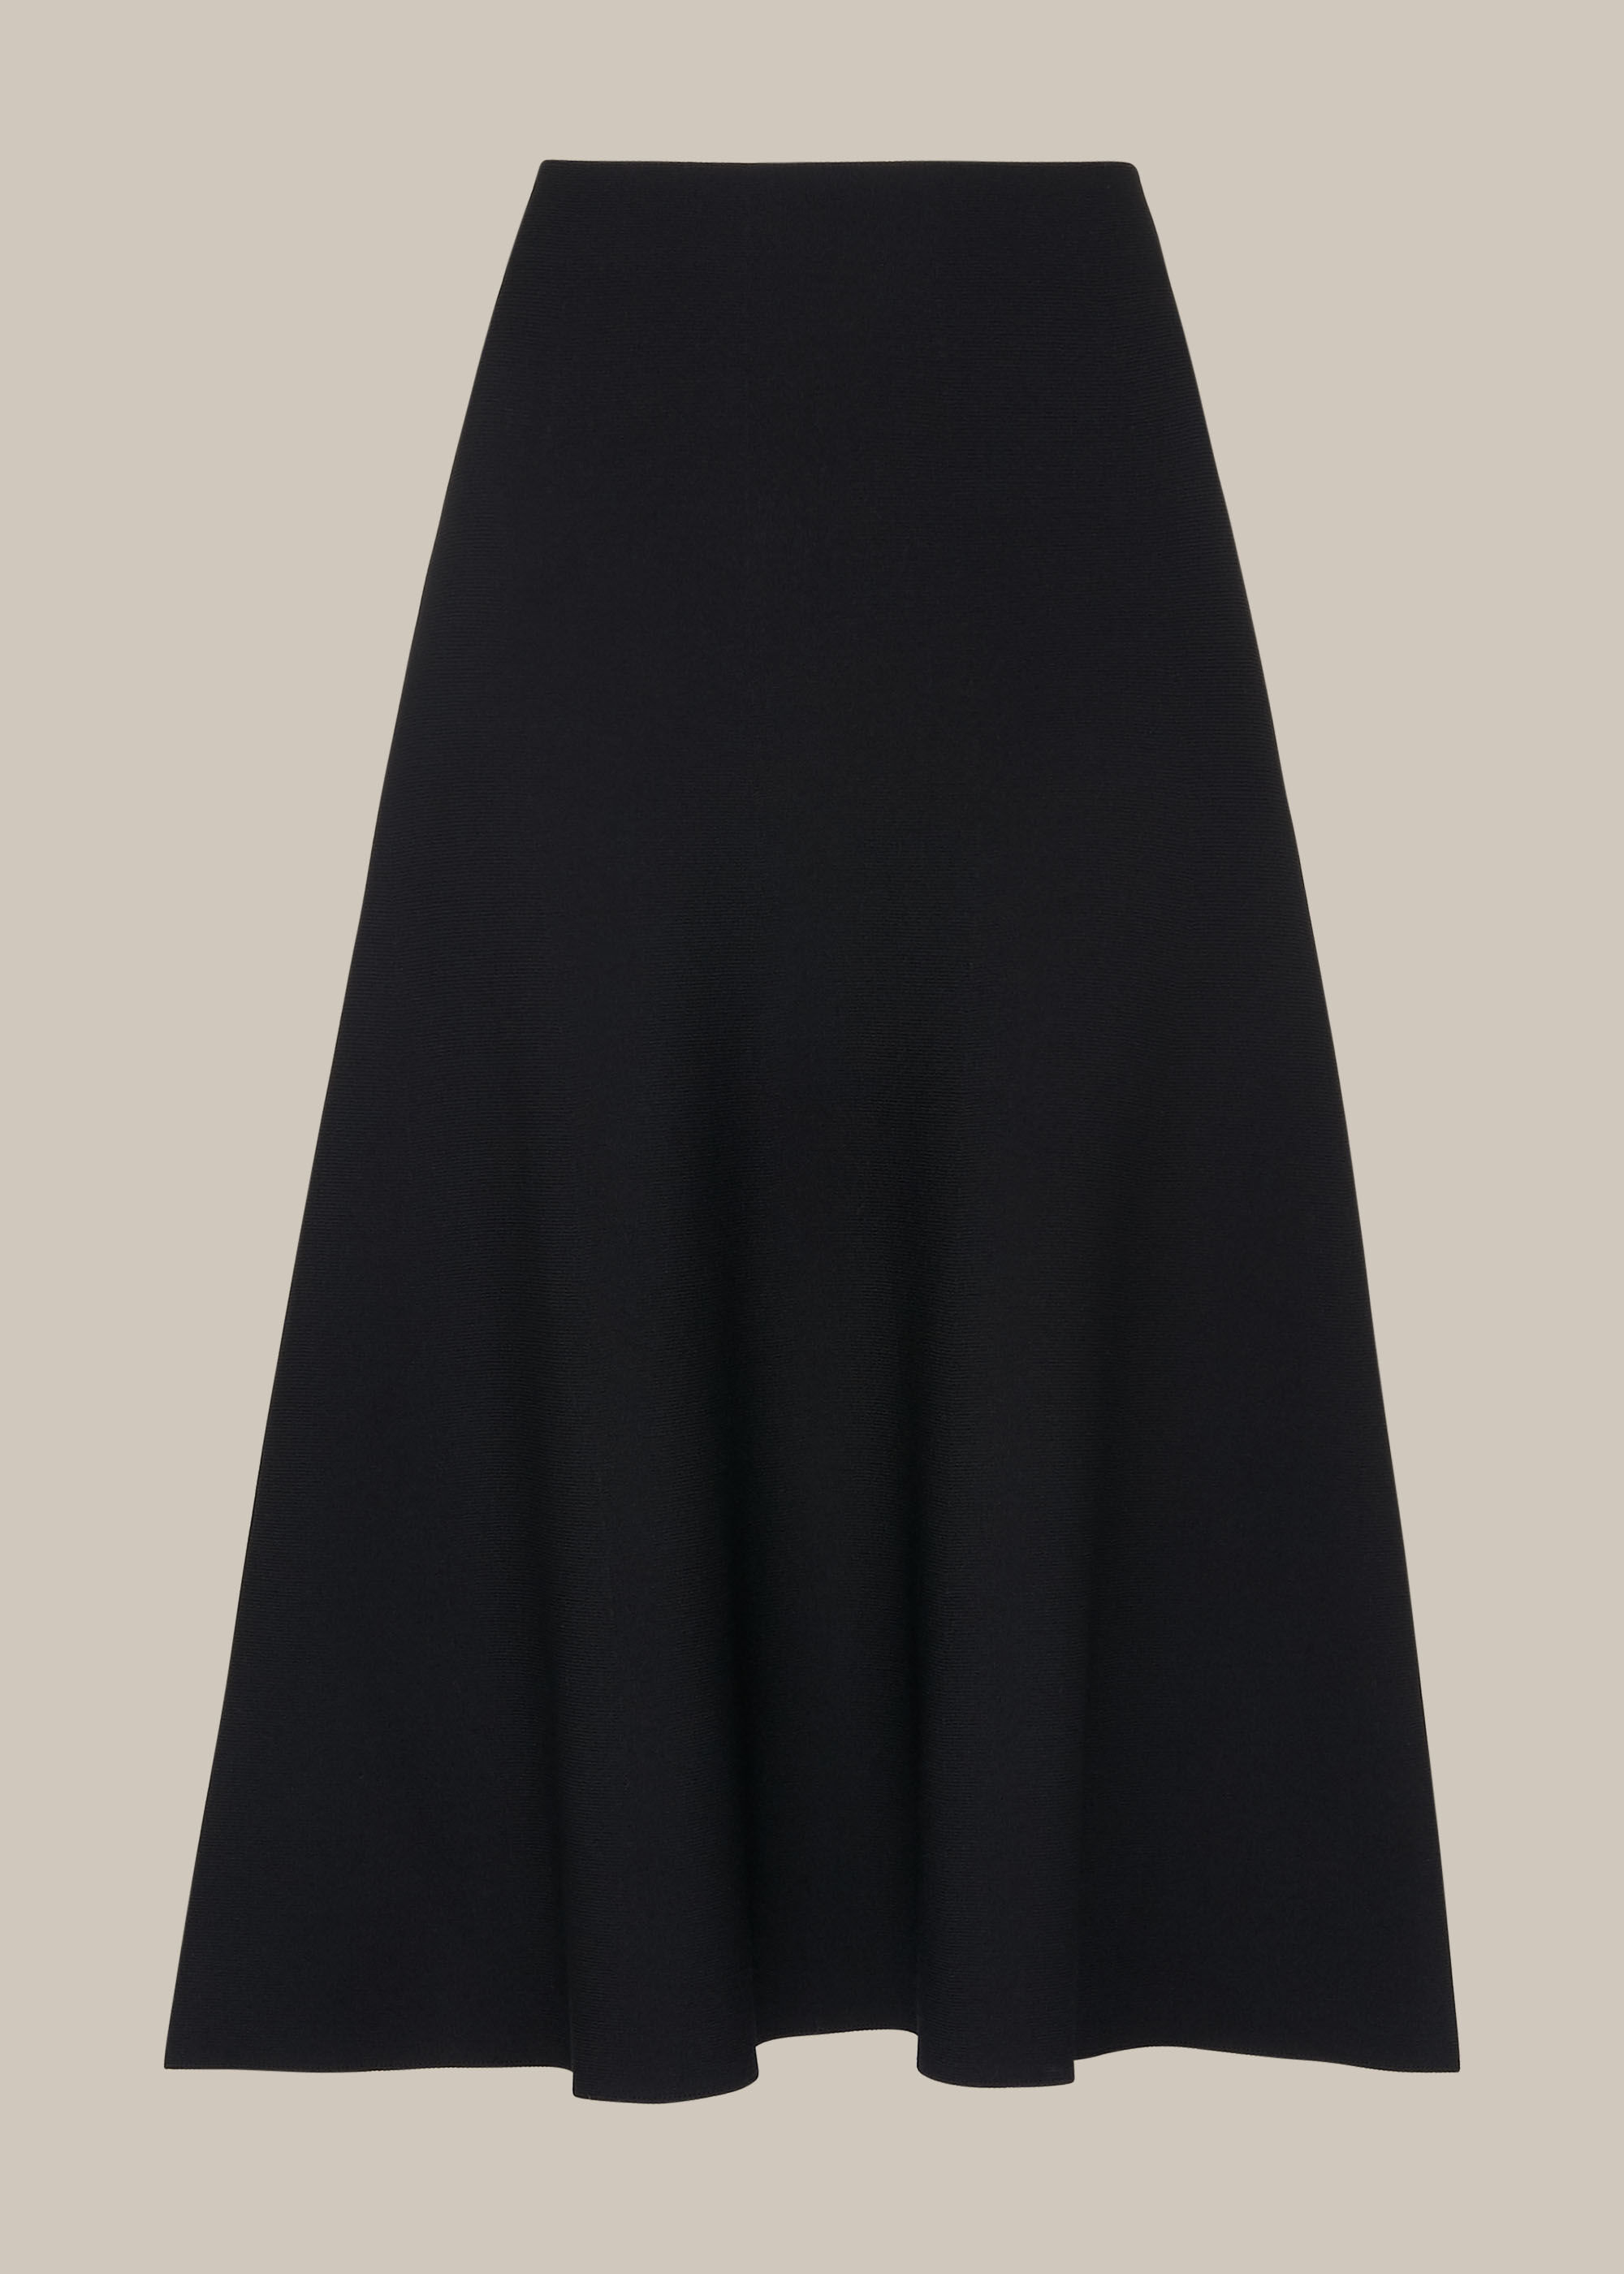 Black Flare Knitted Skirt | WHISTLES | Whistles US |